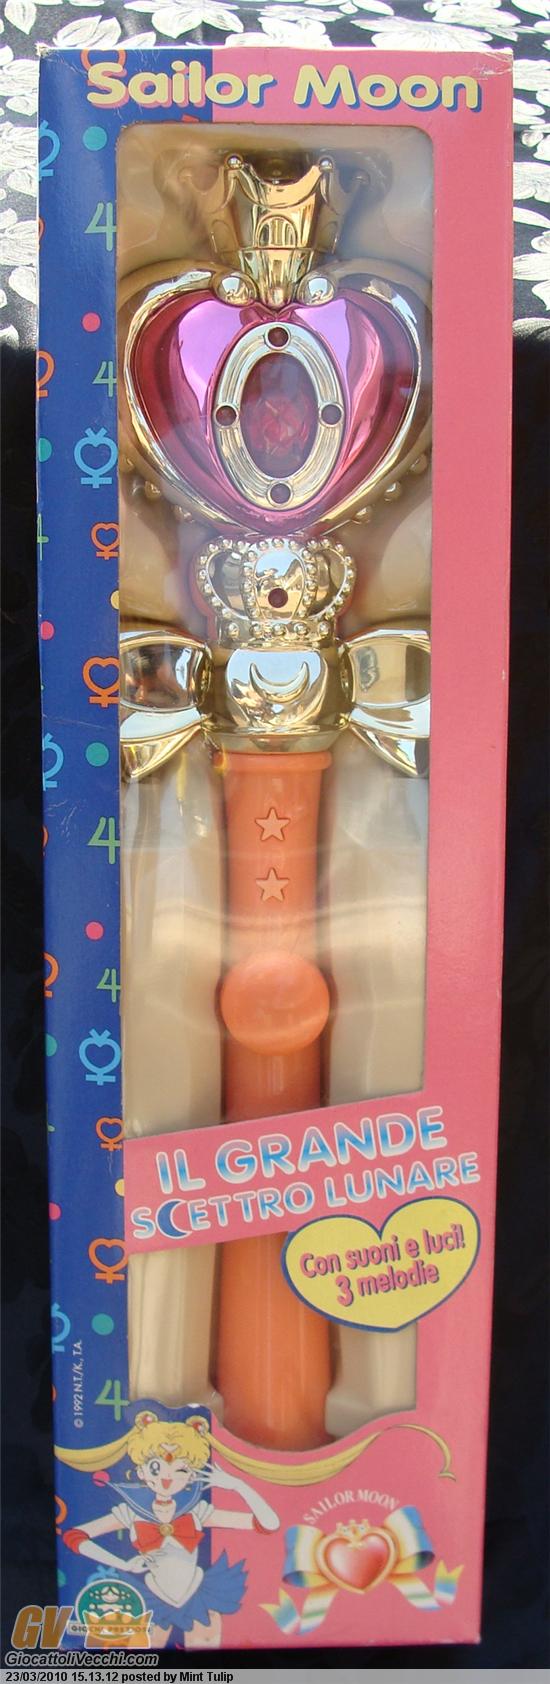 Cerco vari oggetti bambole di Sailor Moon Help Grande10